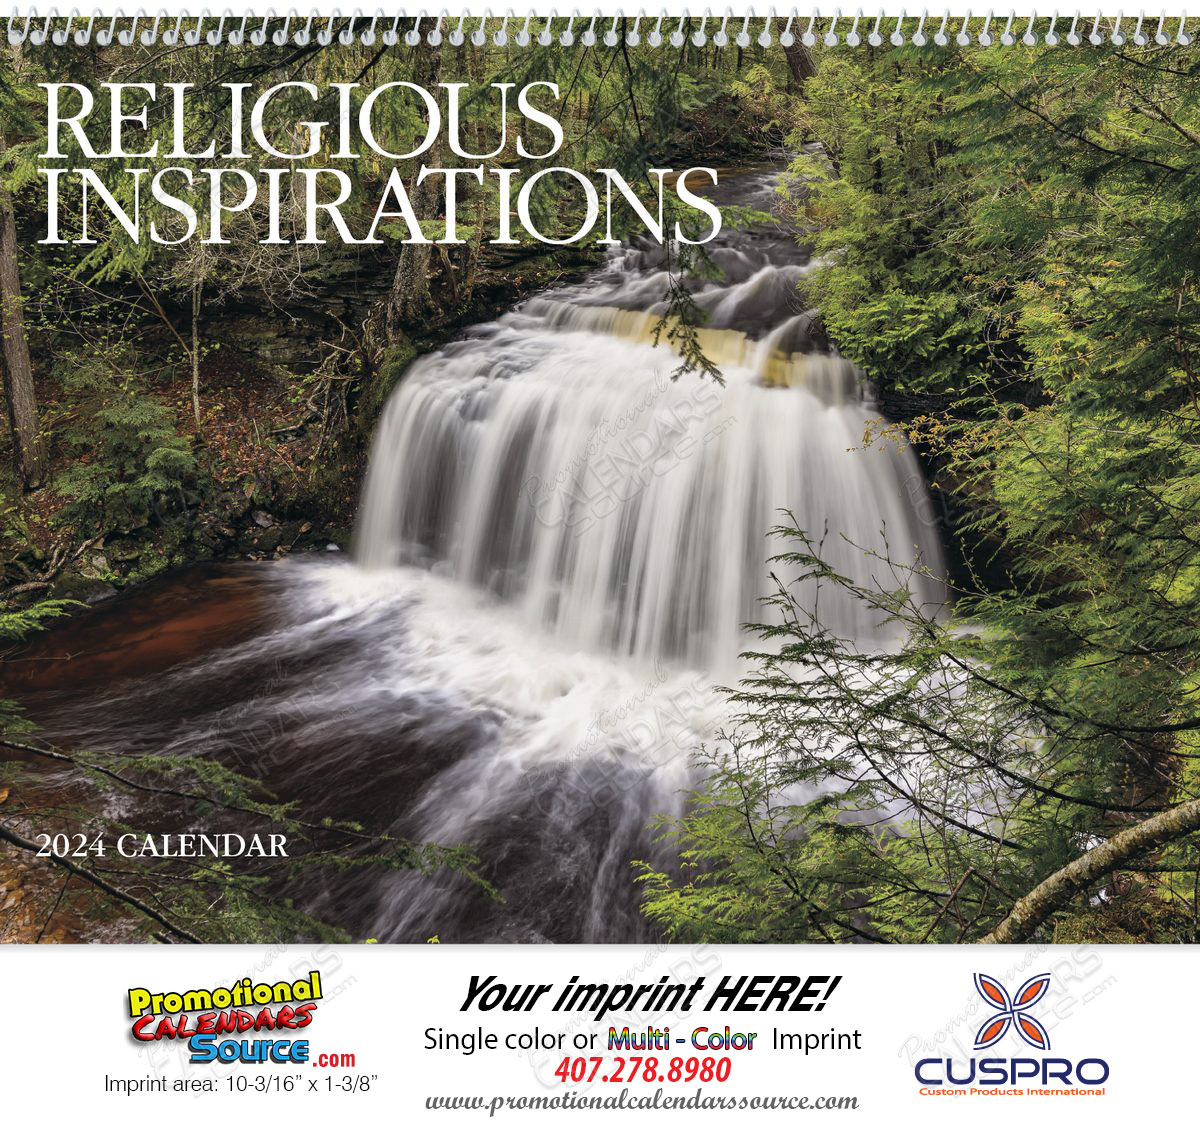 Religious Inspirations Promotional Calendar 